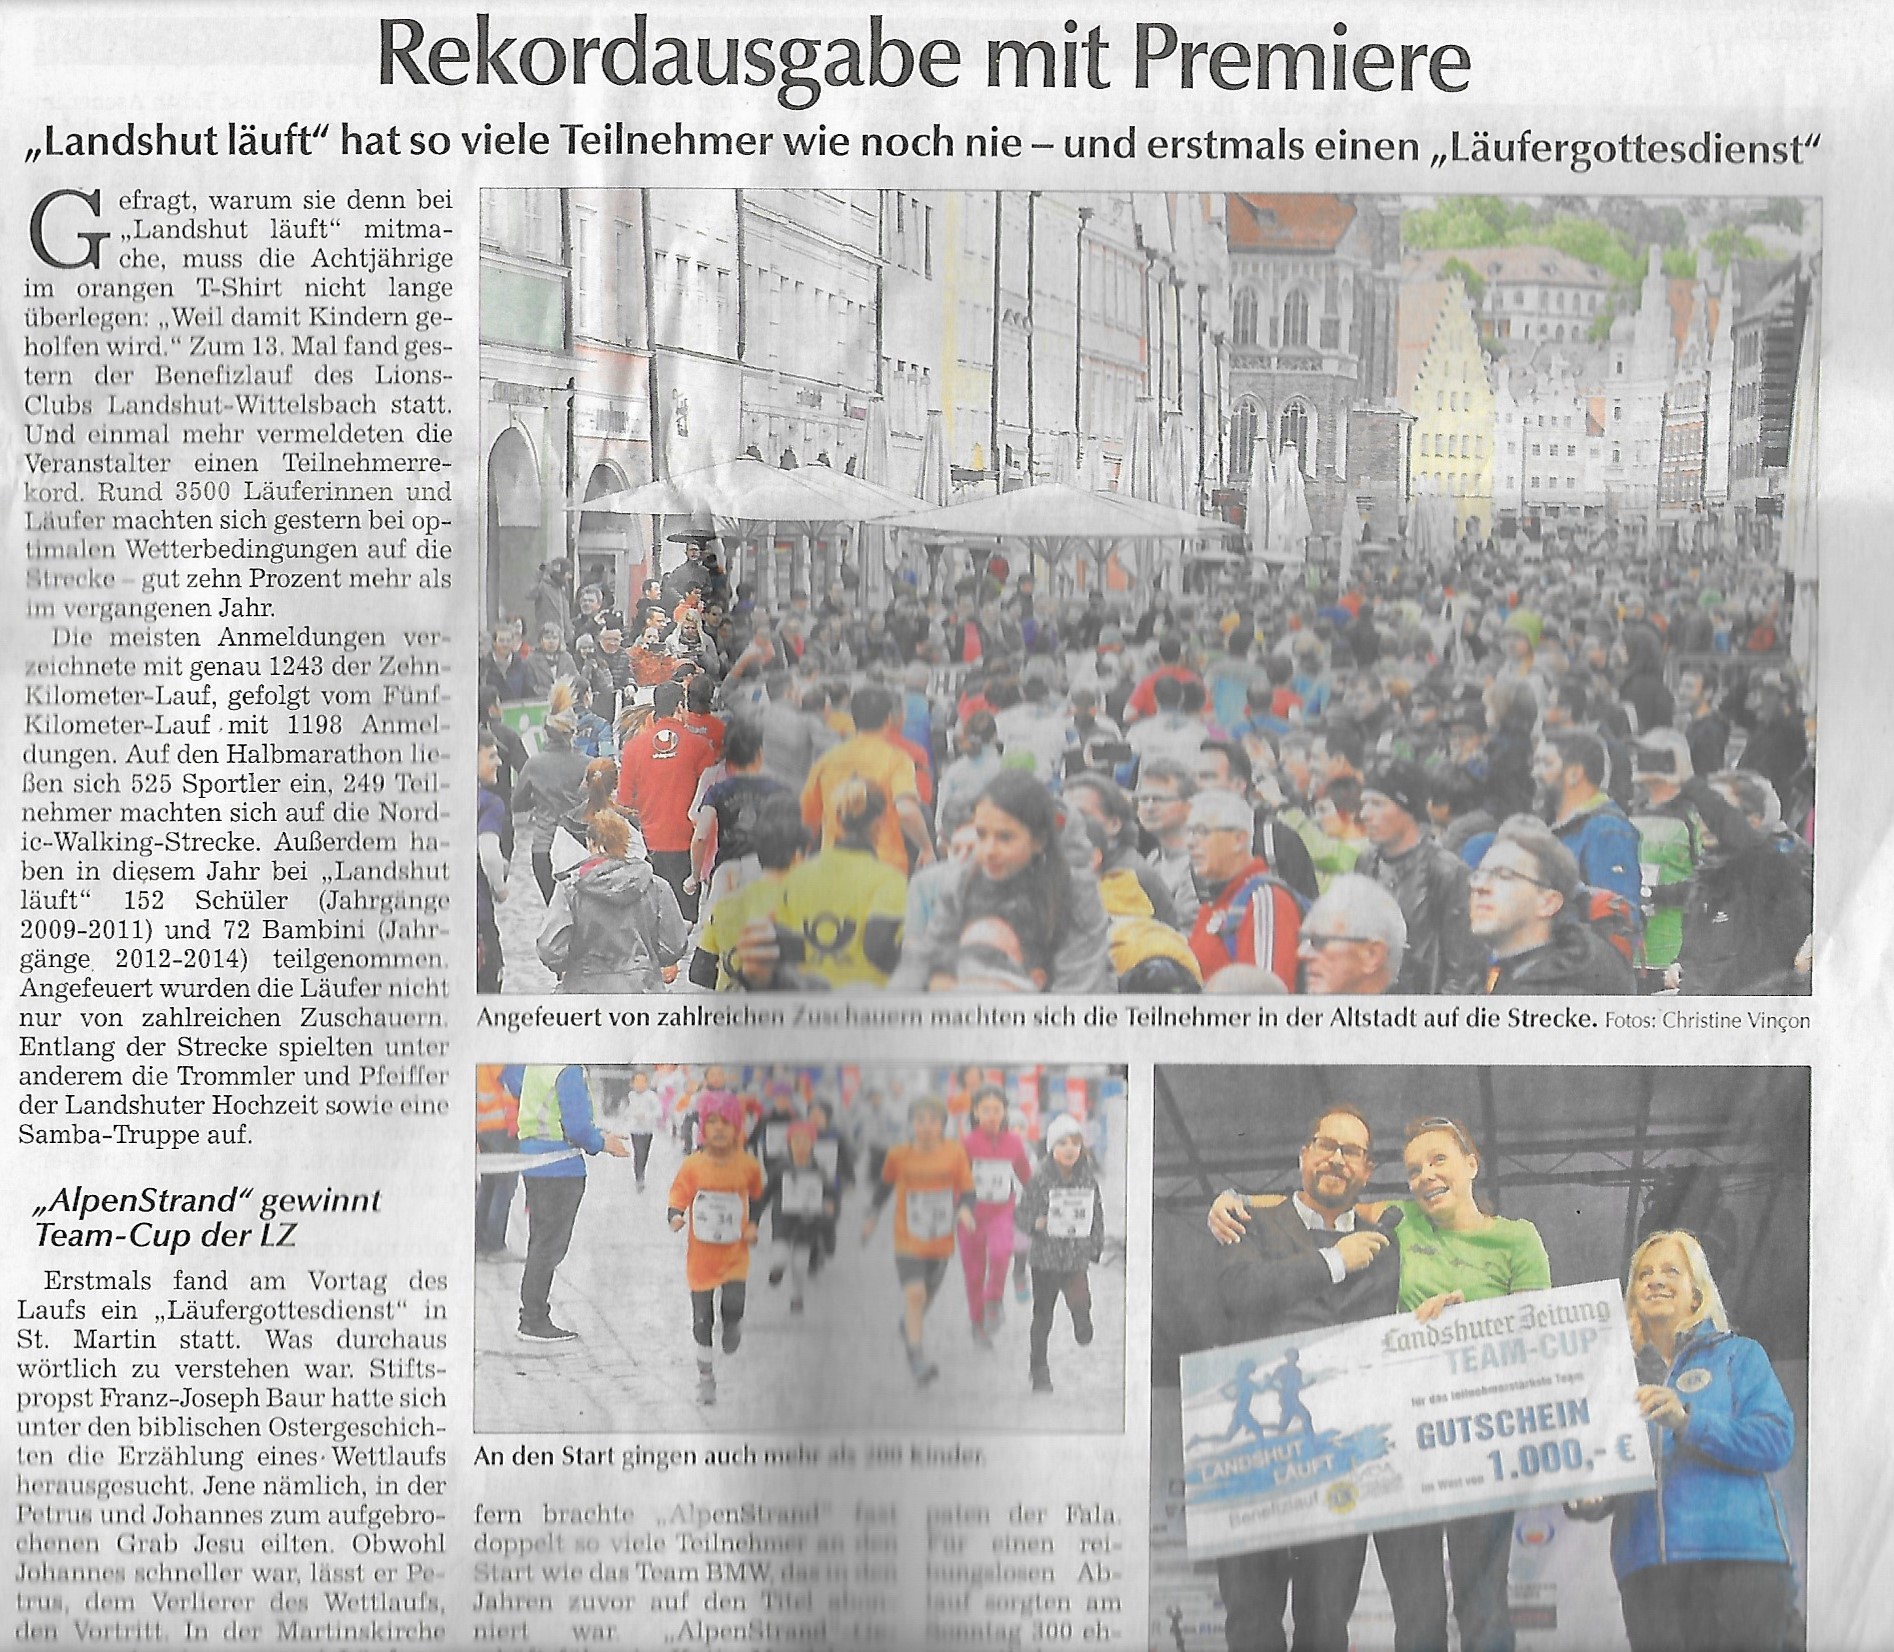 Landshuter Zeitung reportage